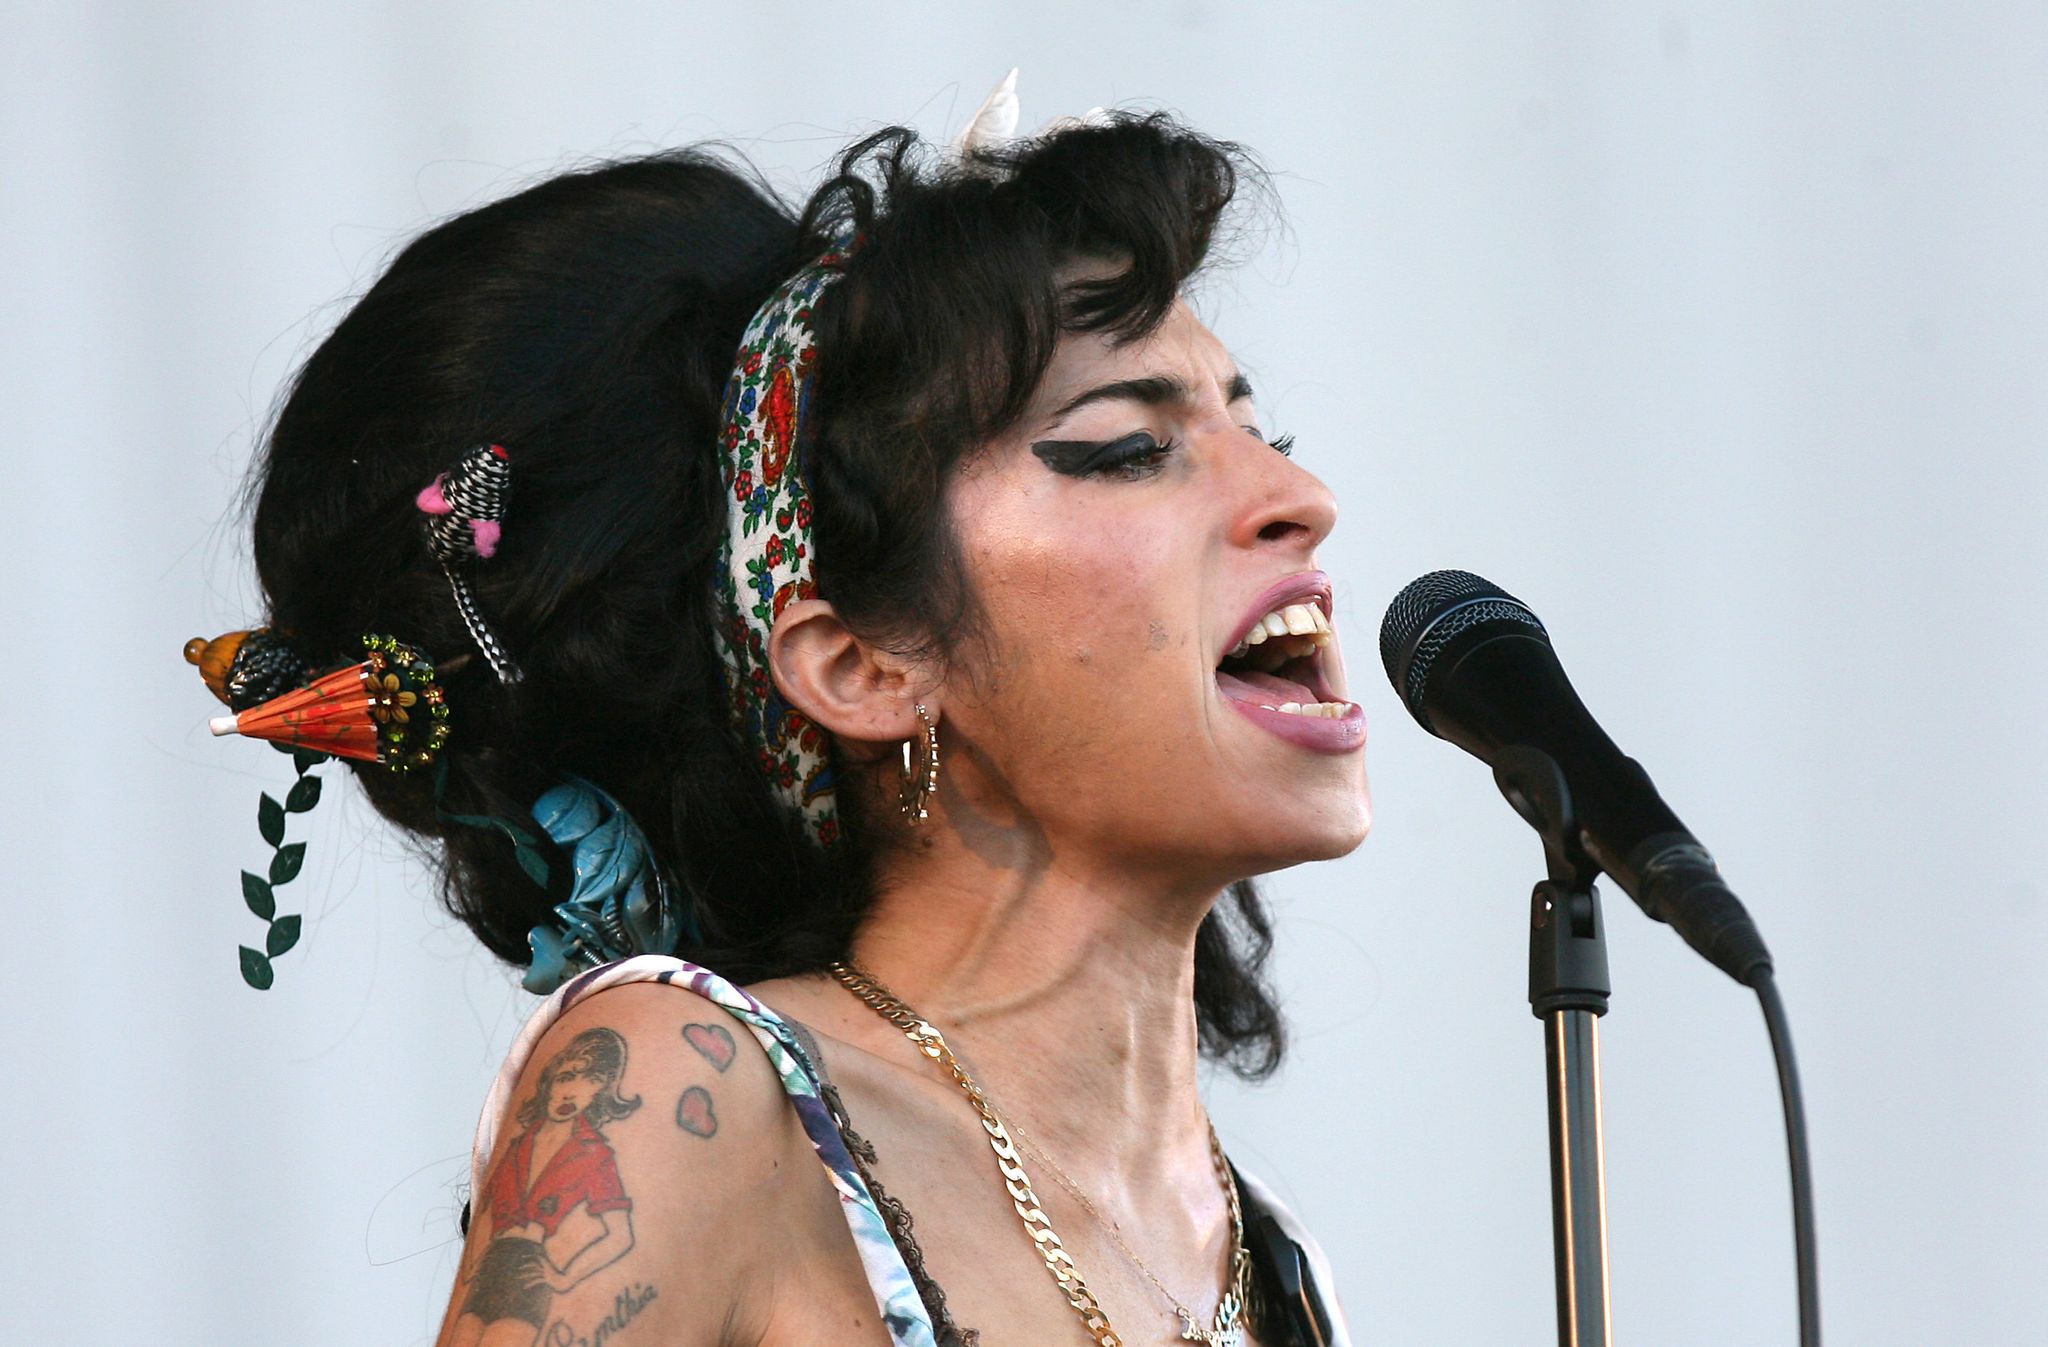 Ein erster Trailer zum Biopic über die 2011 gestorbene Soul-Ikone Amy Winehouse wurde veröffentlicht. Nach dem Album-Titel «Back to Black» benannt, handelt der Film von den Anfängen und Erfolgen der Grammy-Gewinnerin und von ihrem bewegten Privatleben.